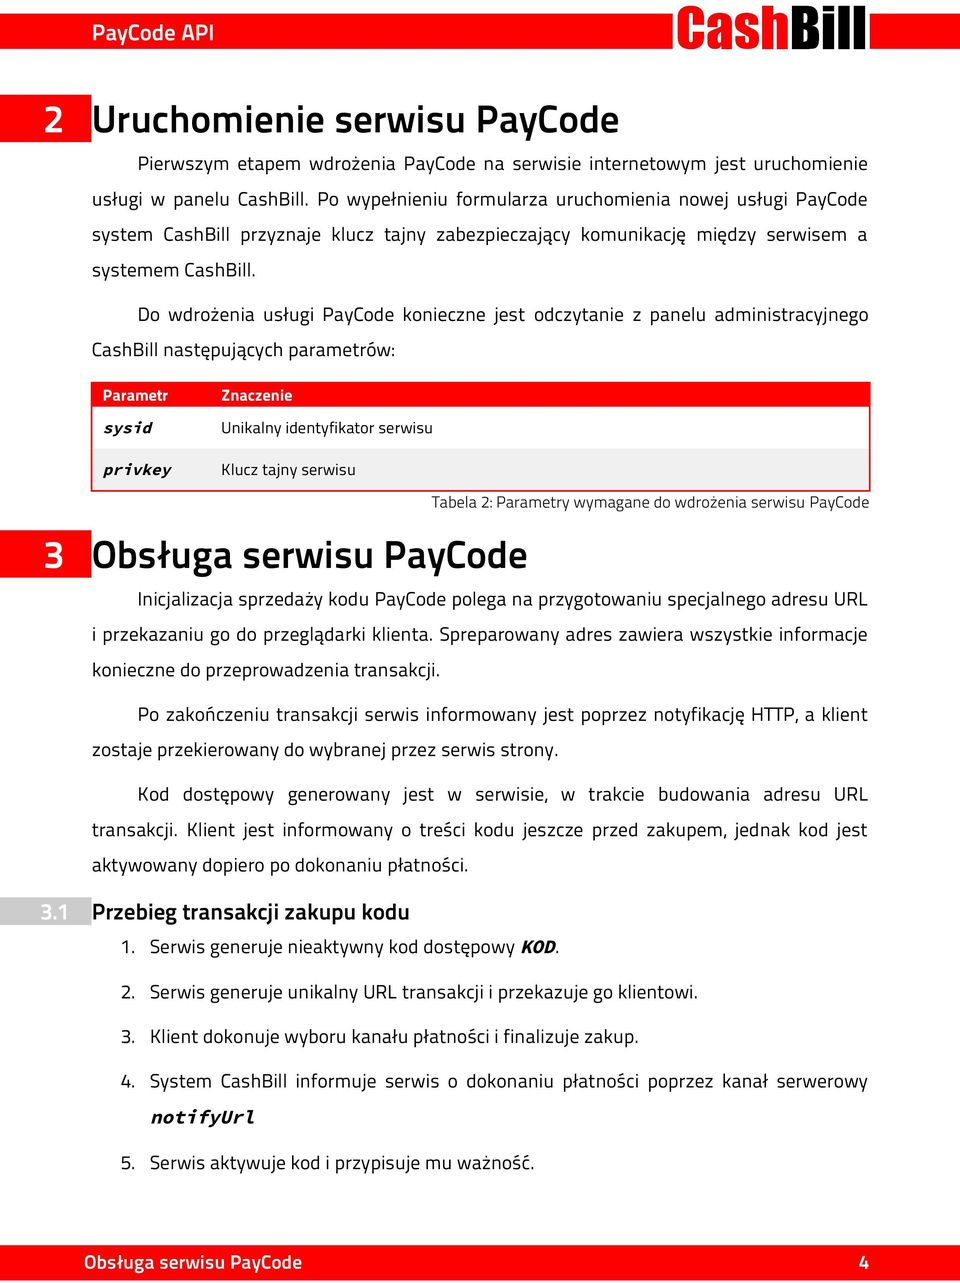 Do wdrożenia usługi PayCode konieczne jest odczytanie z panelu administracyjnego CashBill następujących parametrów: Parametr sysid privkey Znaczenie Unikalny identyfikator serwisu Klucz tajny serwisu